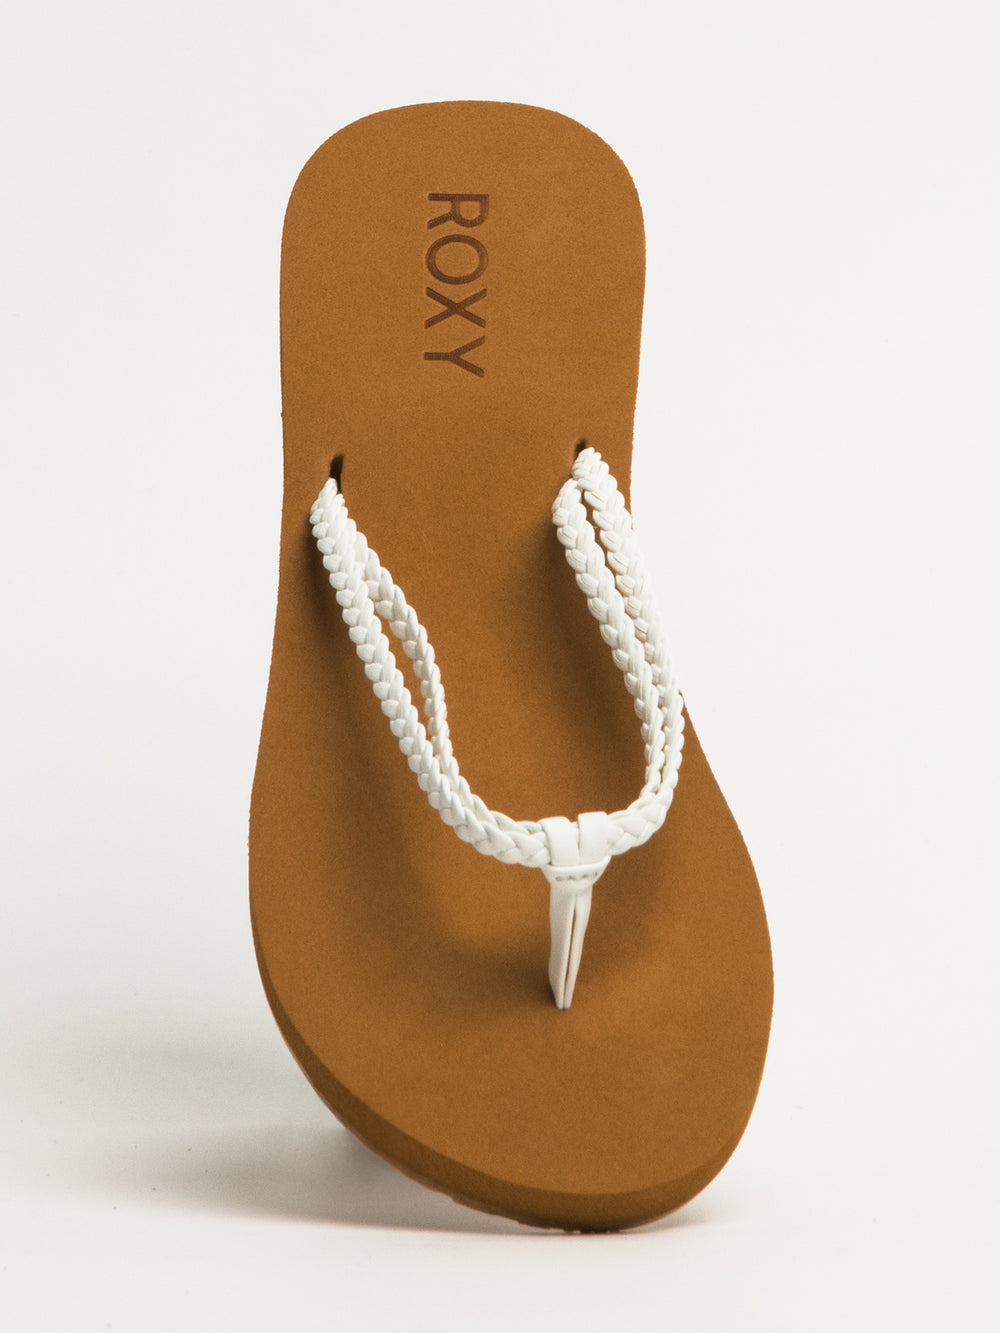 Roxy Women's Costas Sandal Flip-Flop 